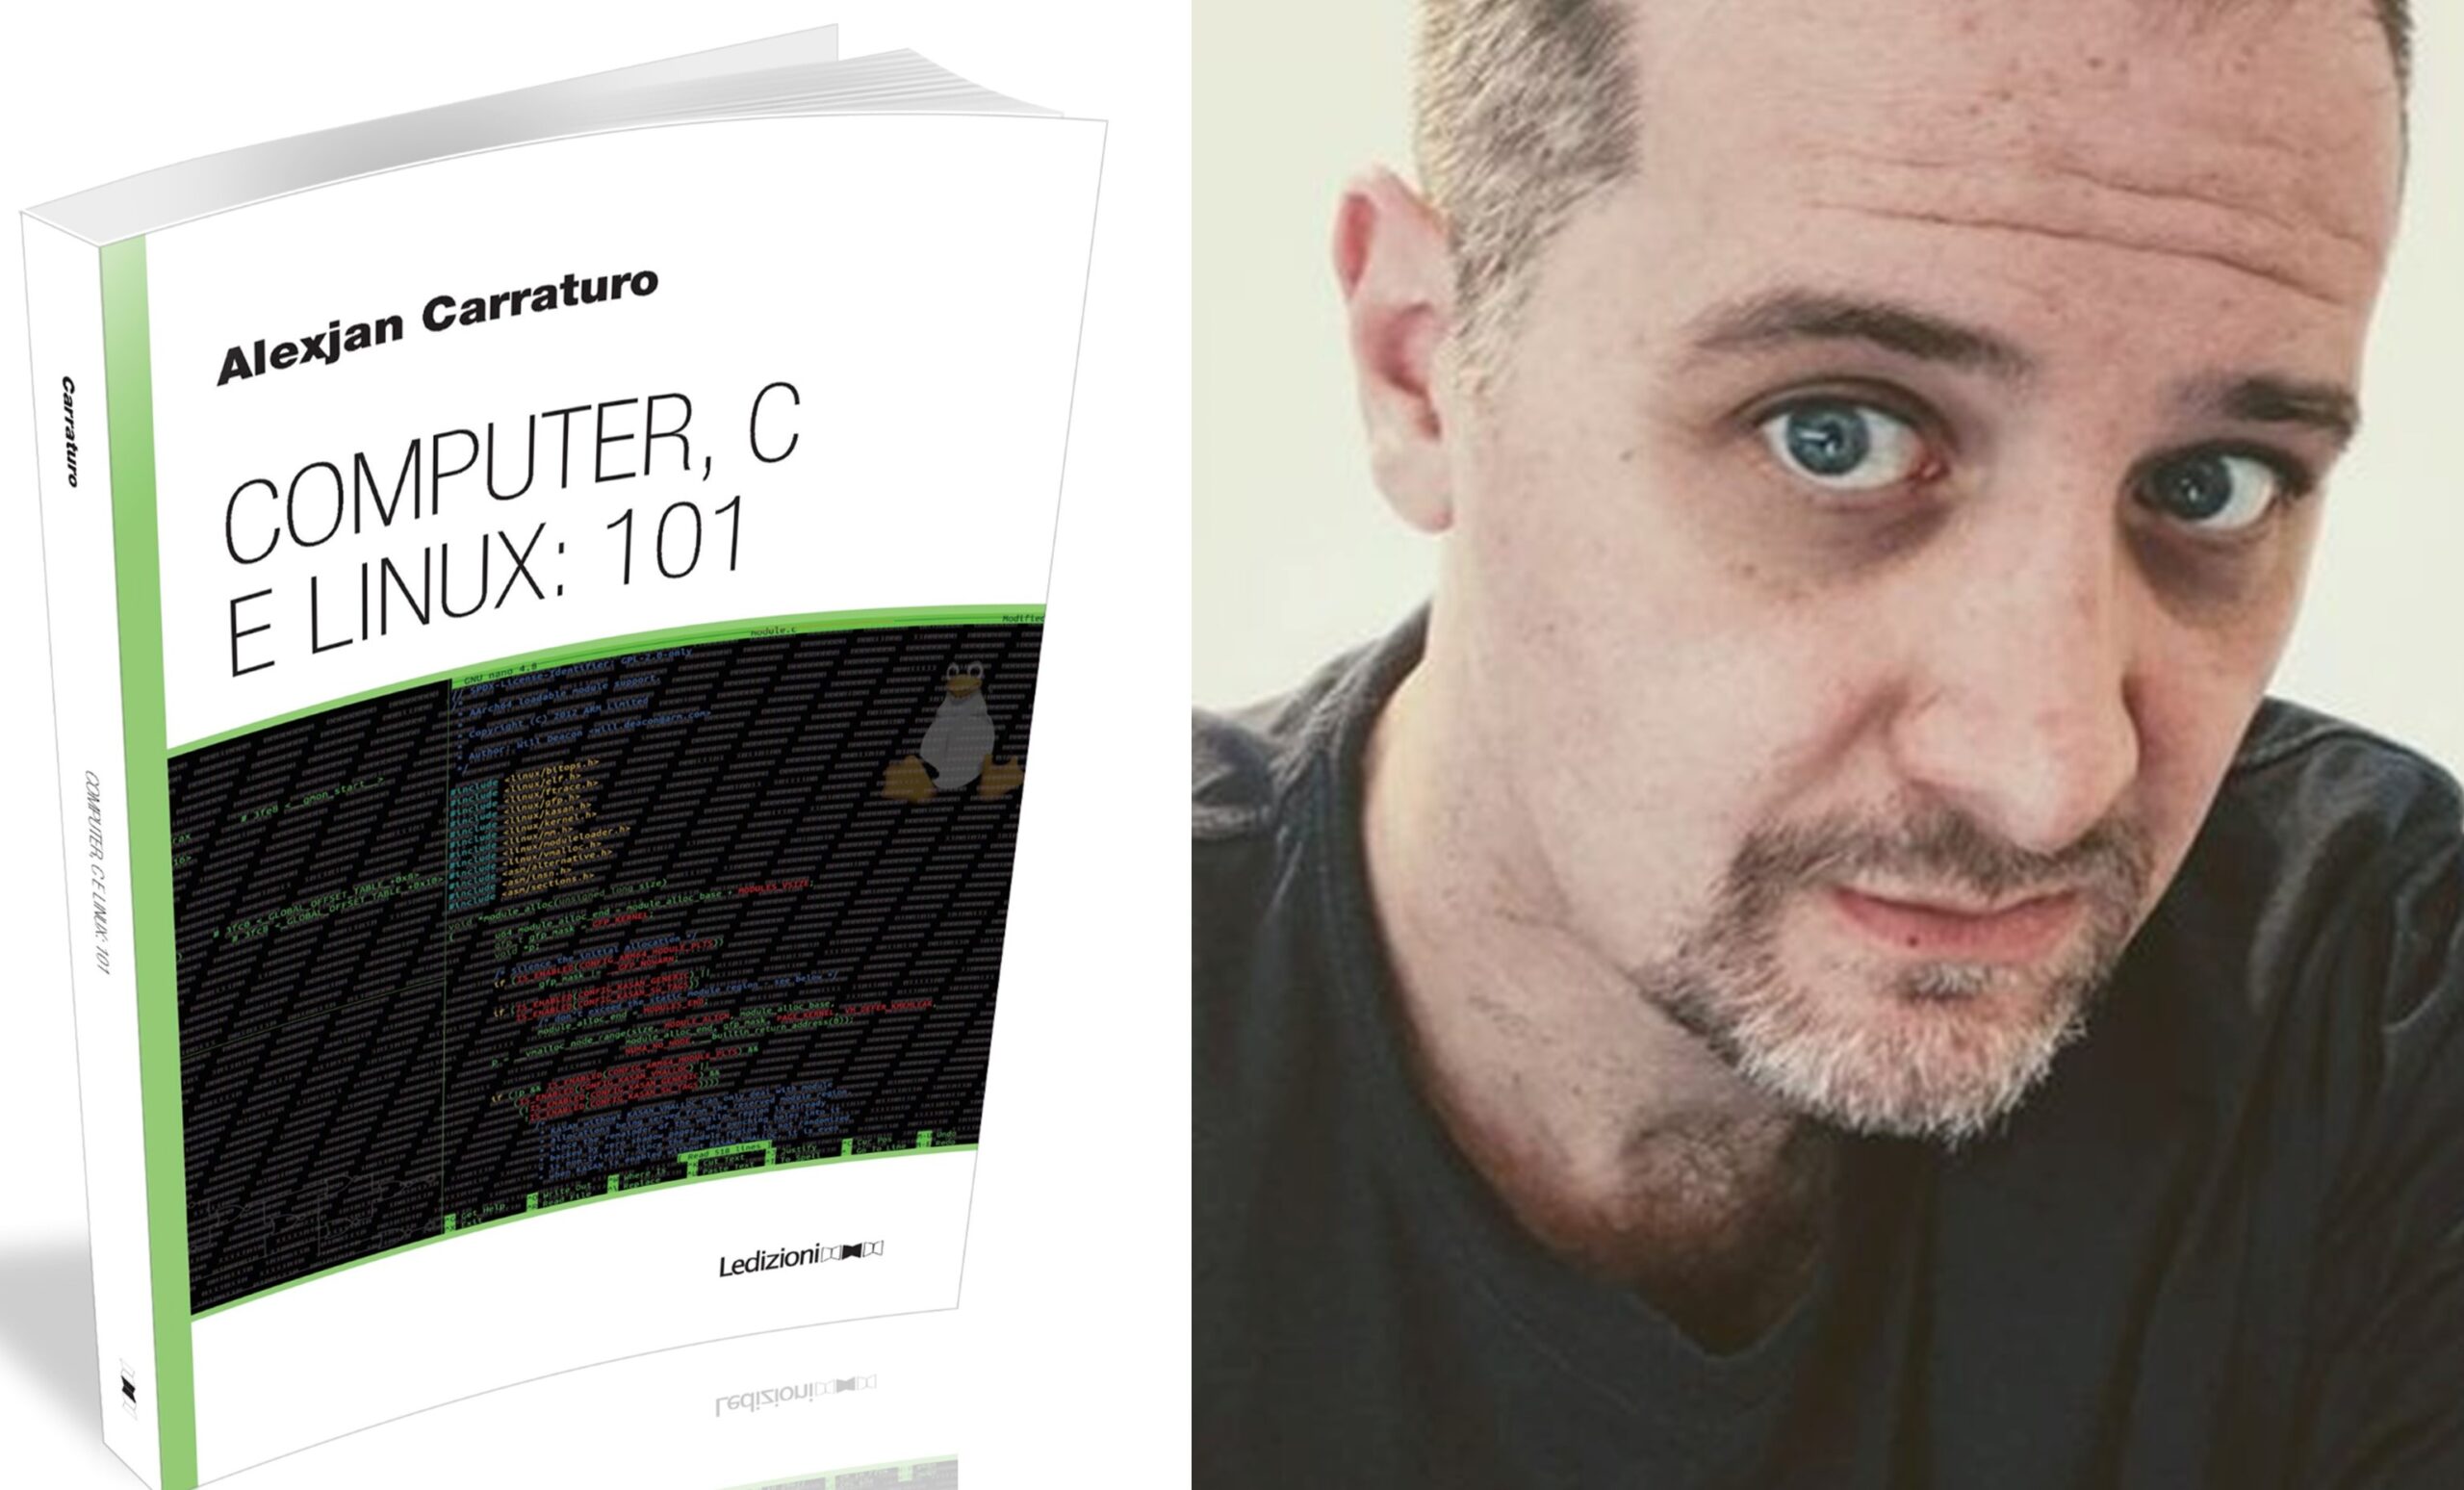 Computer, C e Linux: 101, il nuovo libro di Alexjan Carraturo